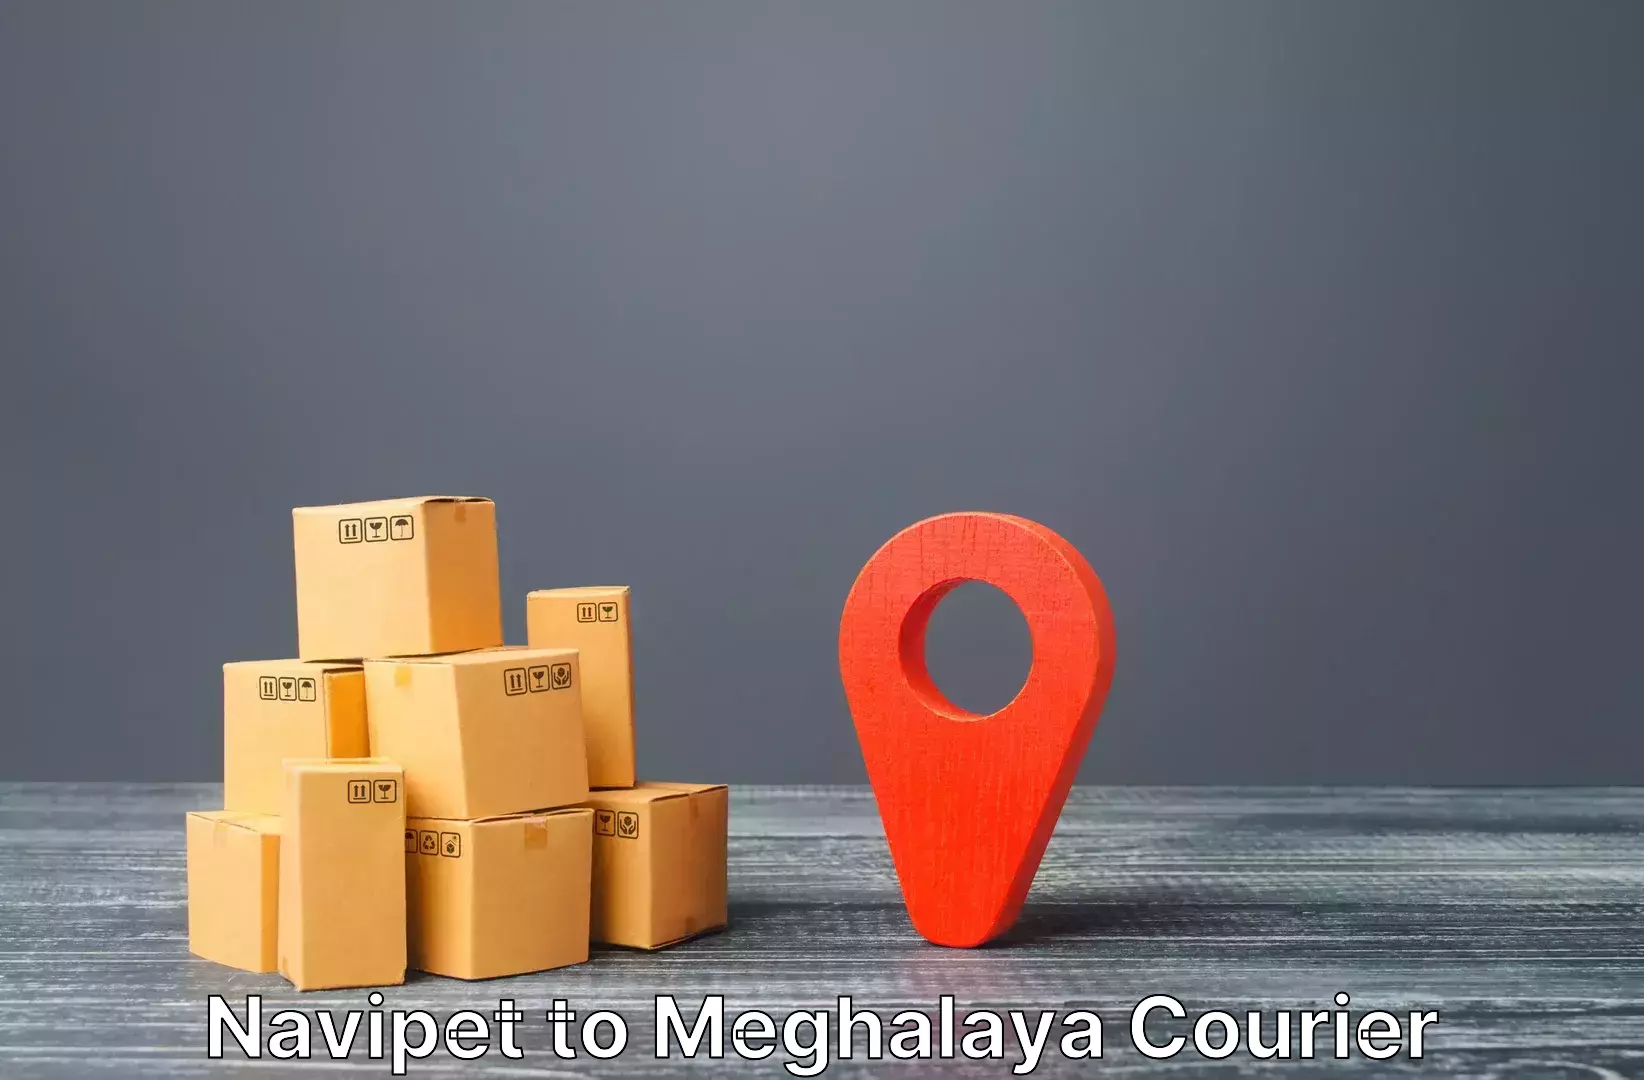 Baggage transport scheduler Navipet to Meghalaya